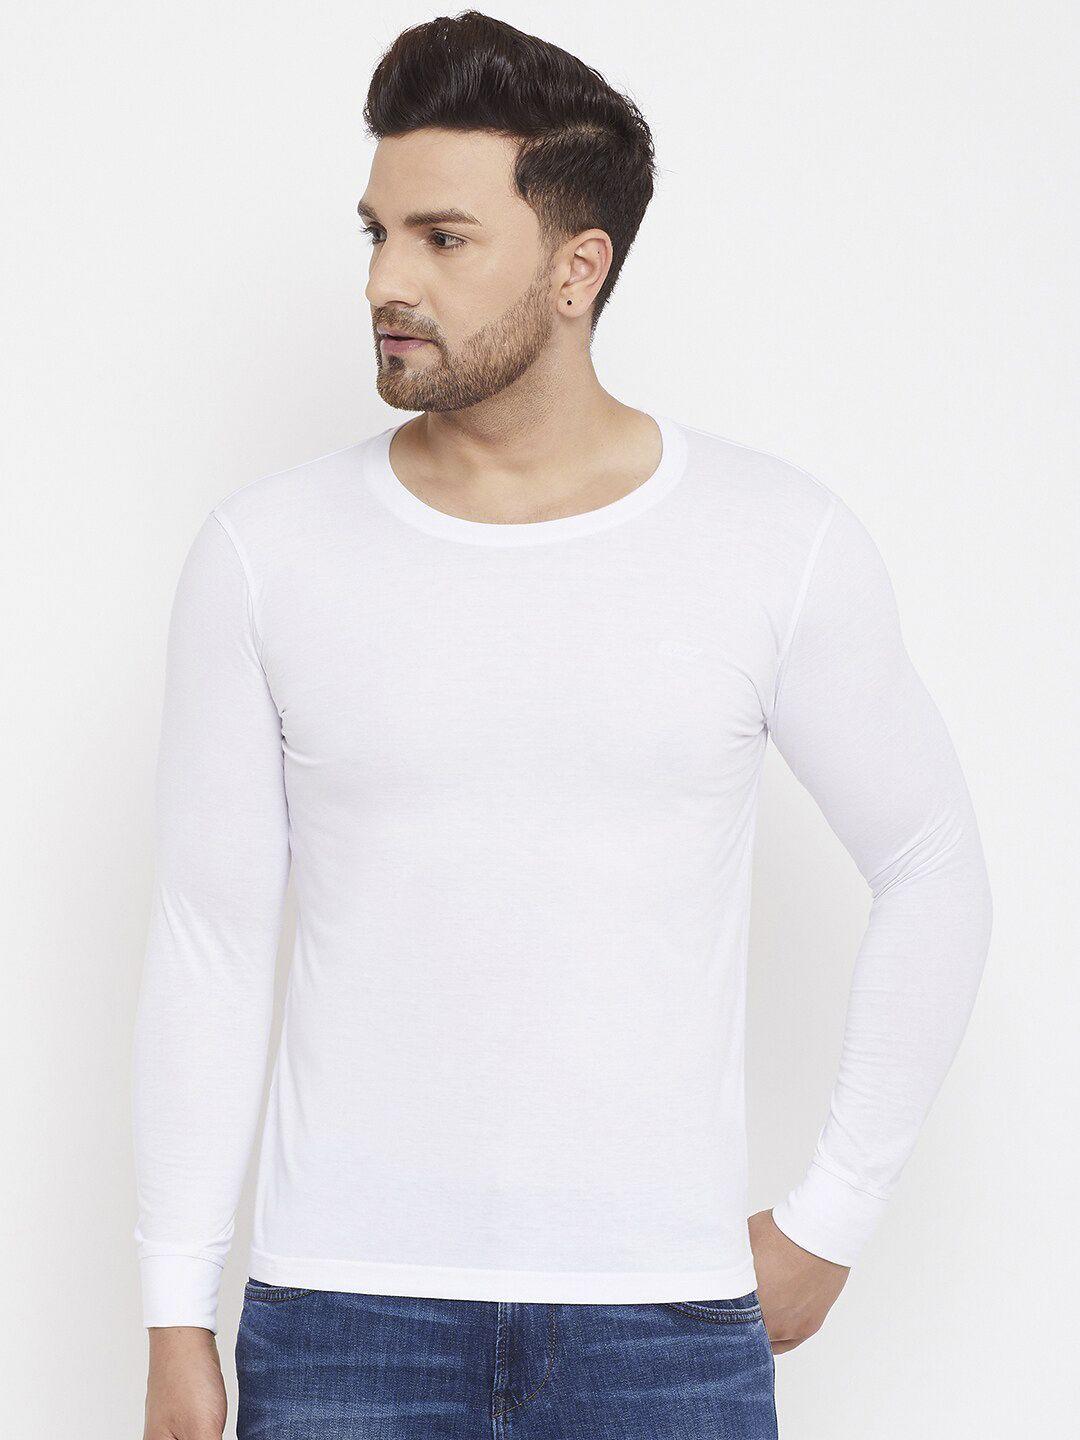 adobe-men-white-solid-round-neck-t-shirt